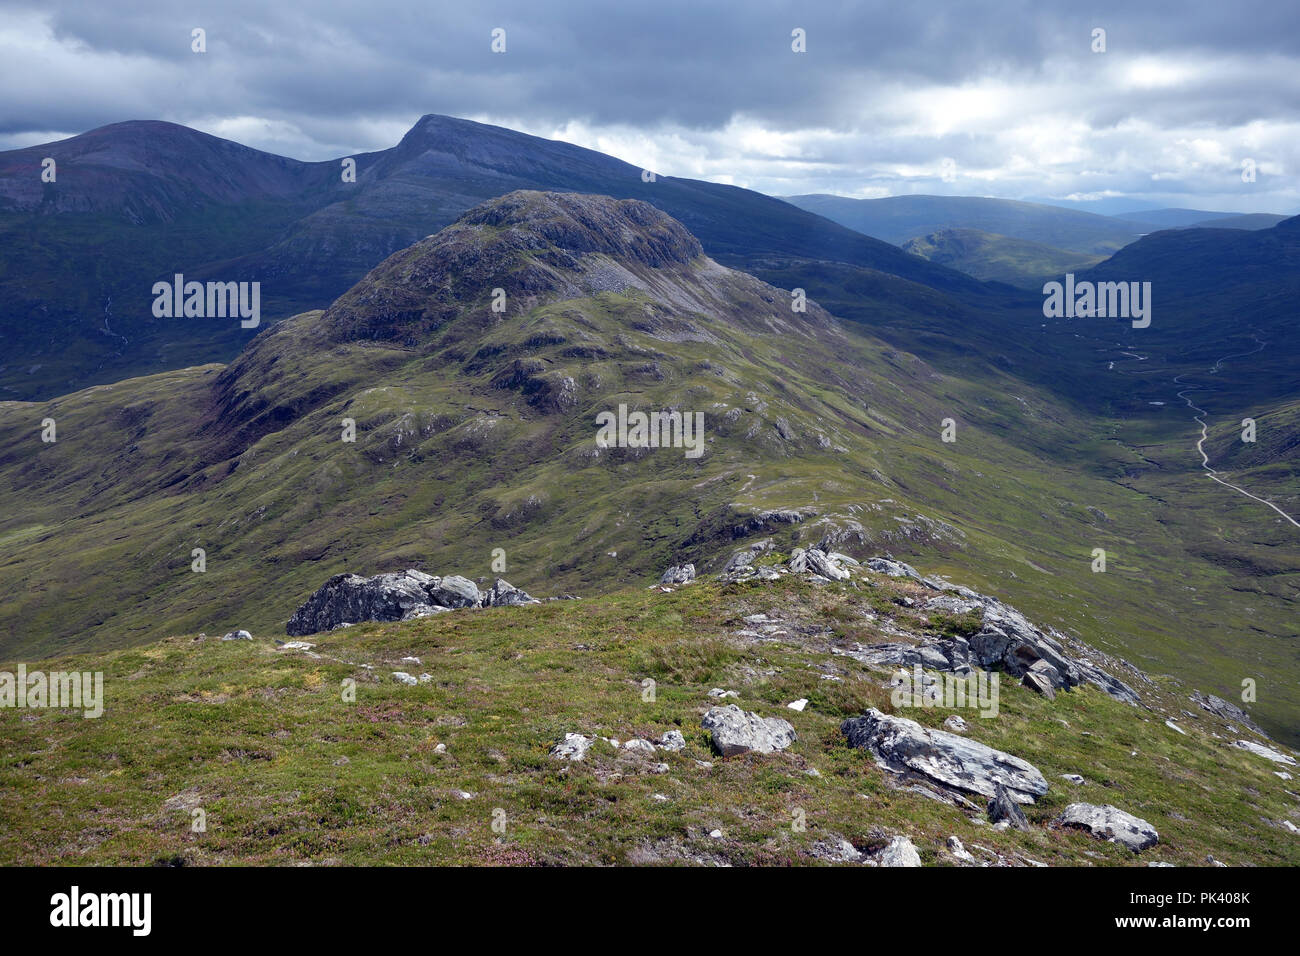 La montagne écossaise Corbett Sgurr Innse & les Munros Stob Coire Easain & Stob une corvée Mheadhoin de Cruach Innse, Glen Spean, les Highlands écossais. Banque D'Images